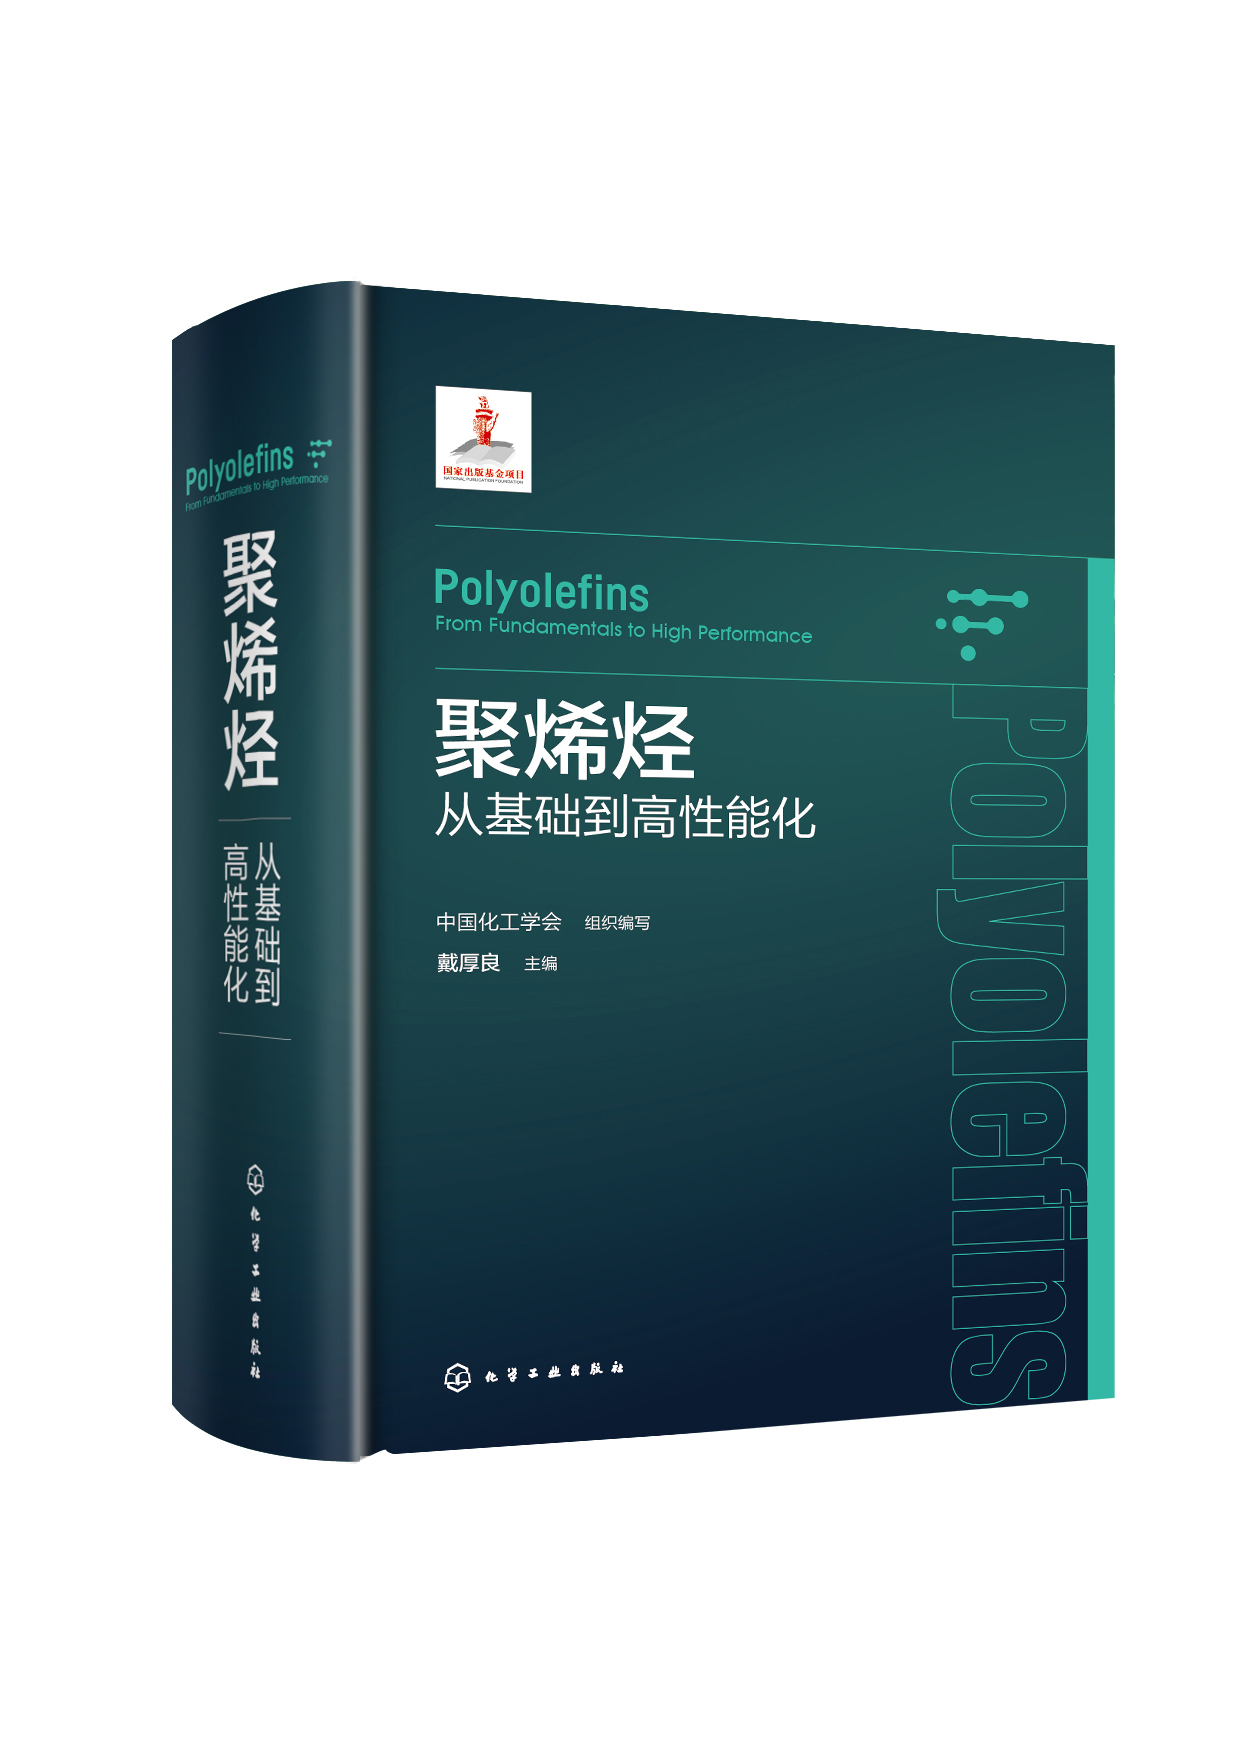 【书】聚烯烃： 从基础到高性能化 中国化工学会组织 编写 戴厚良 9787122431035 化学工业出版社书籍